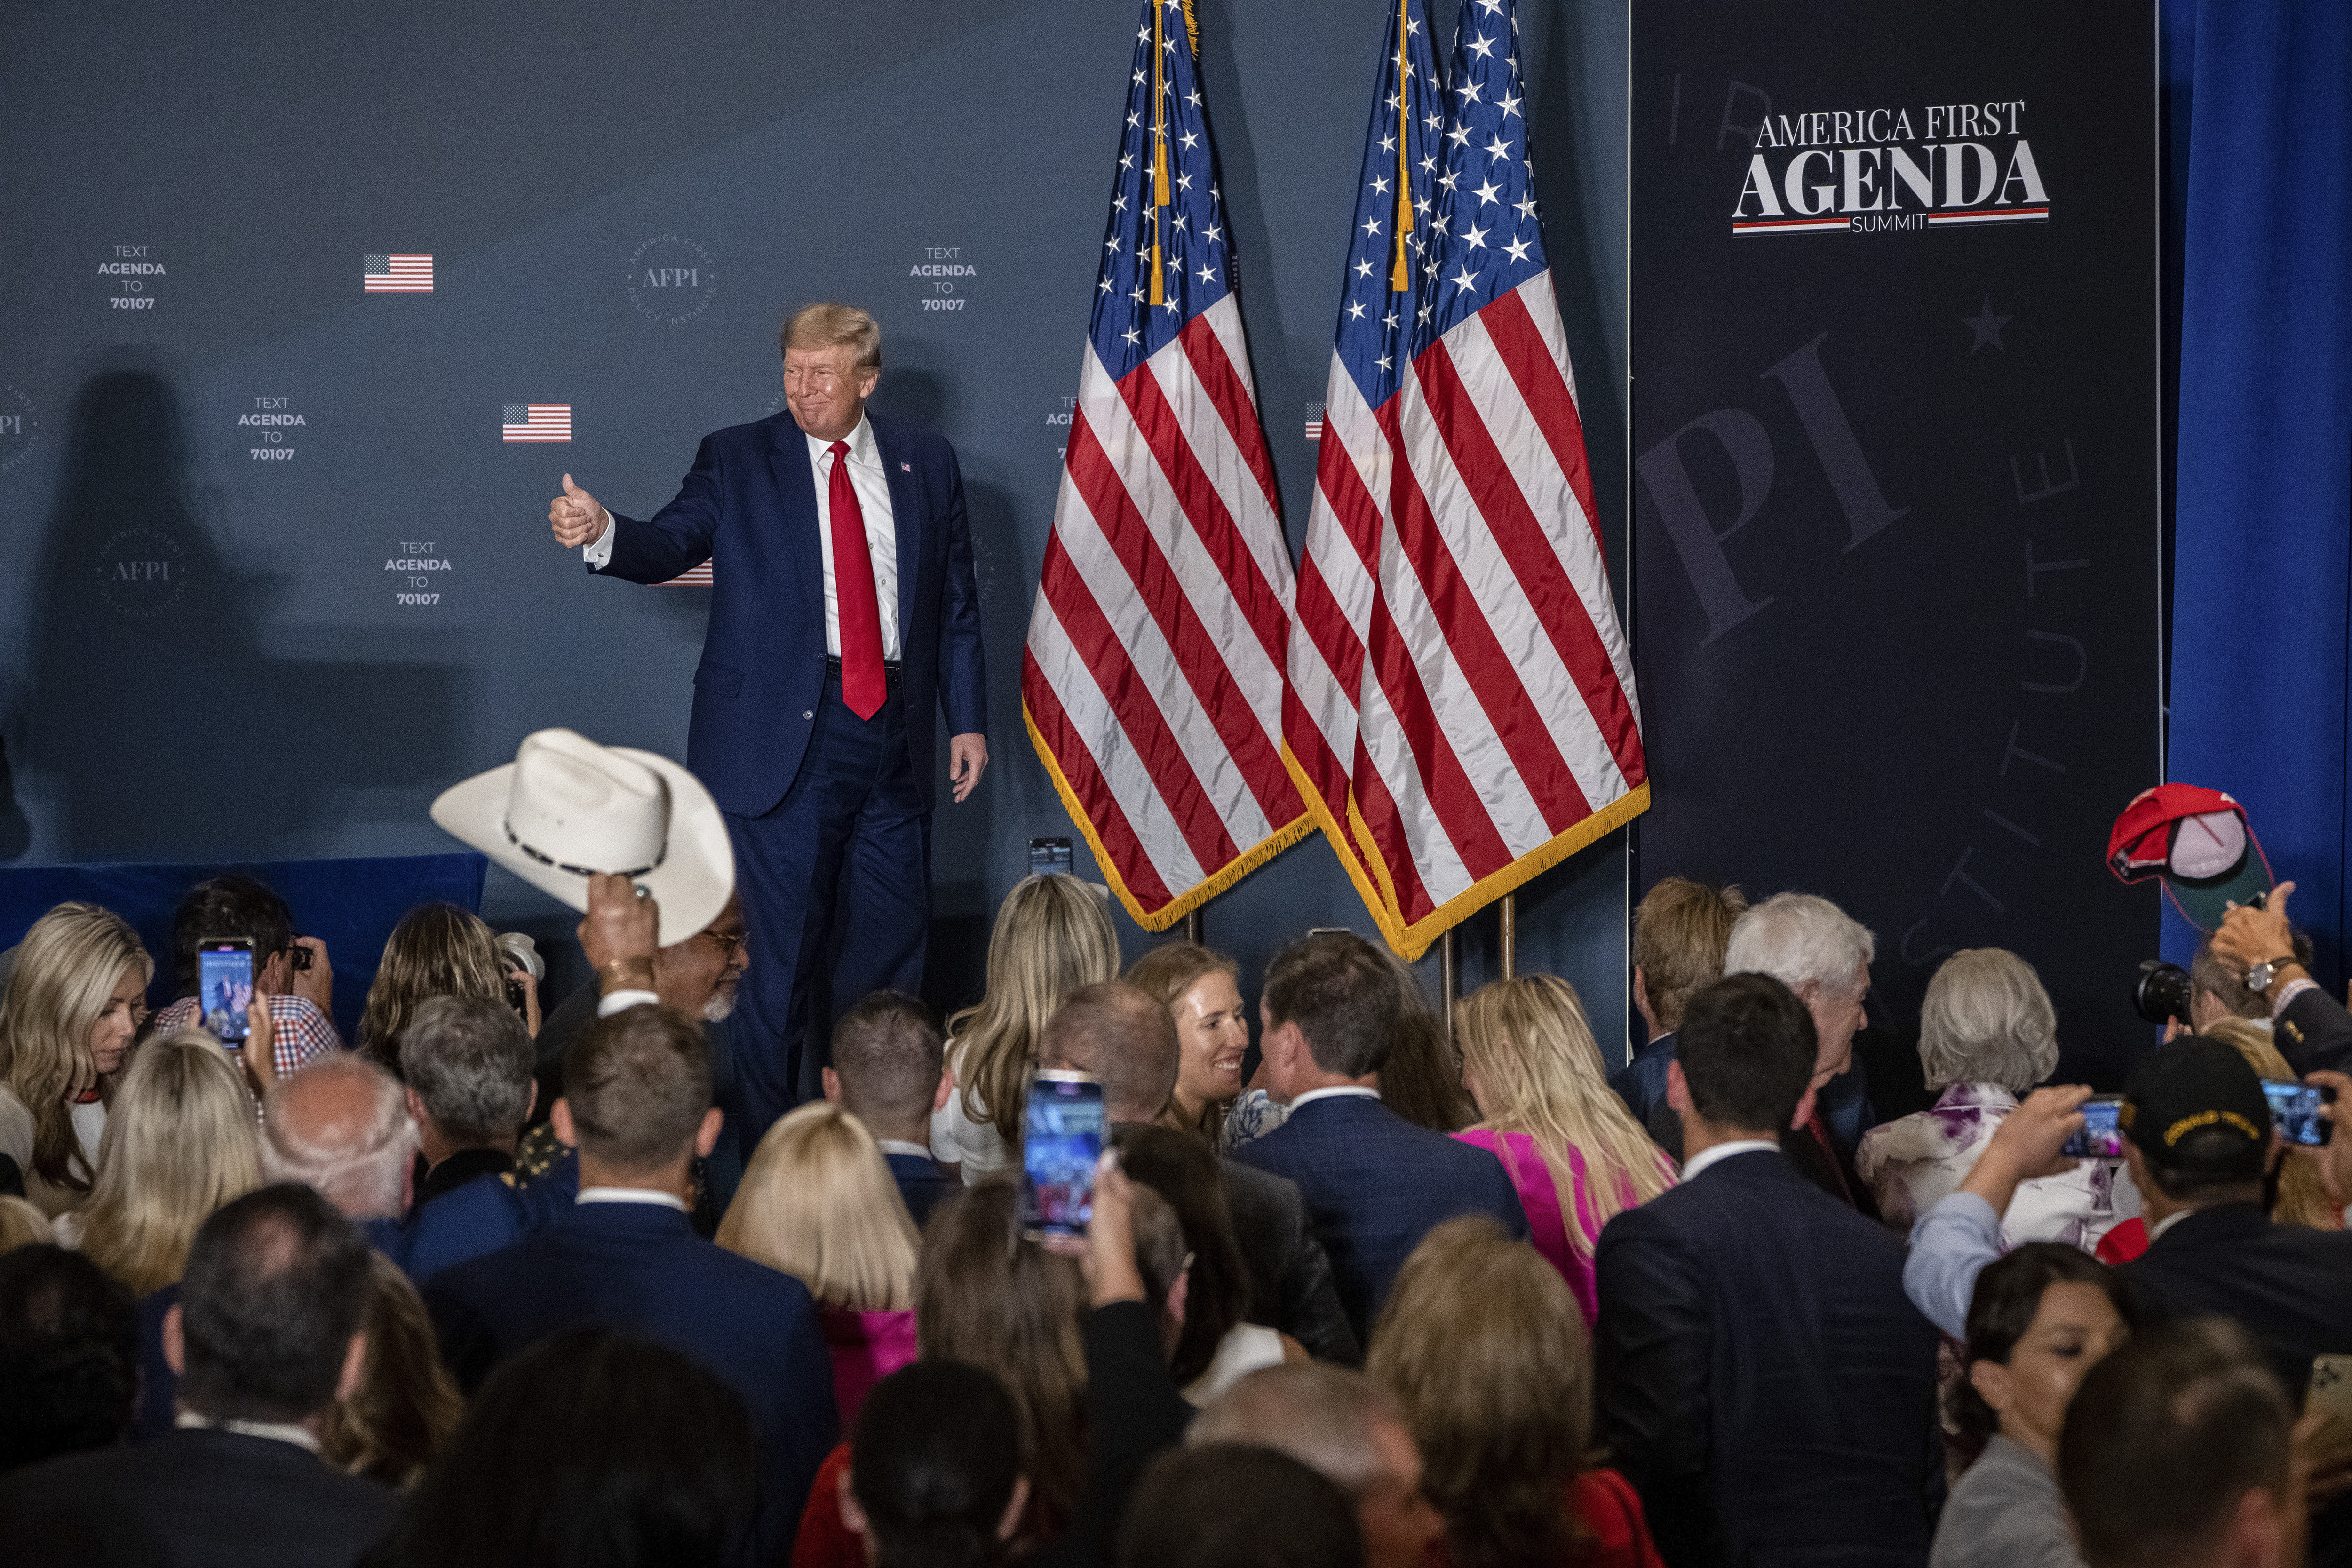 El ex presidente Donald Trump da un pulgar hacia arriba mientras pronuncia un discurso de apertura en la Cumbre del Instituto de Política América Primero en el Hotel Marriott en Washington, el 26 de julio de 2022. (Foto Prensa Libre: Haiyun Jiang/The New York Times)